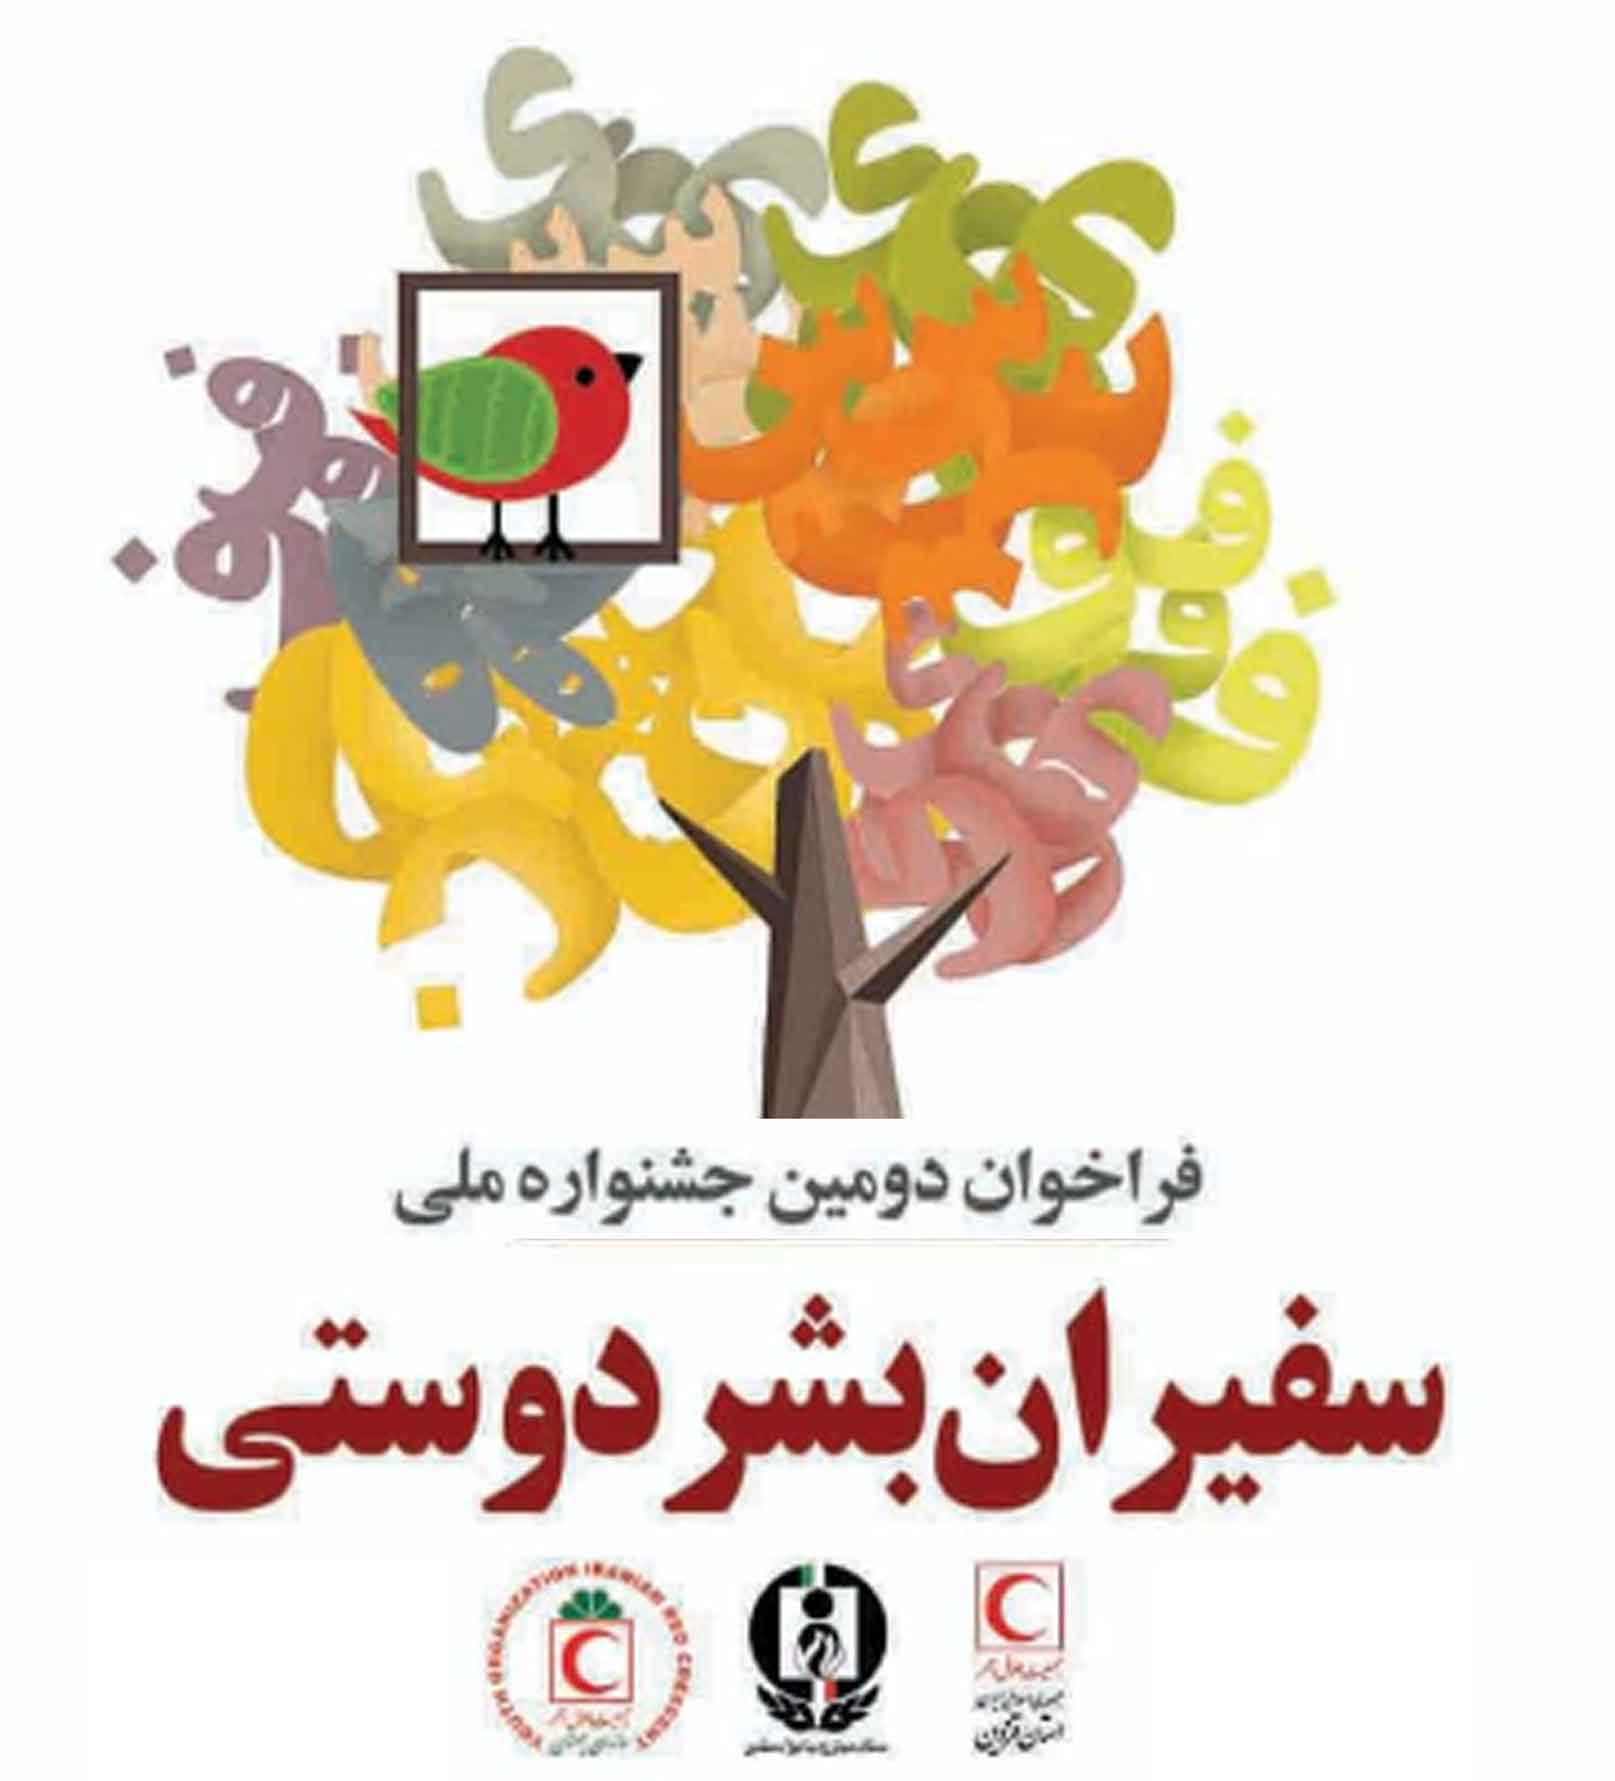 فراخوان دومین جشنواره سراسری "سفیران بشر دوستی" ویژه دانشجویان سراسر کشور به میزبانی جمعیت هلال احمر استان قزوین